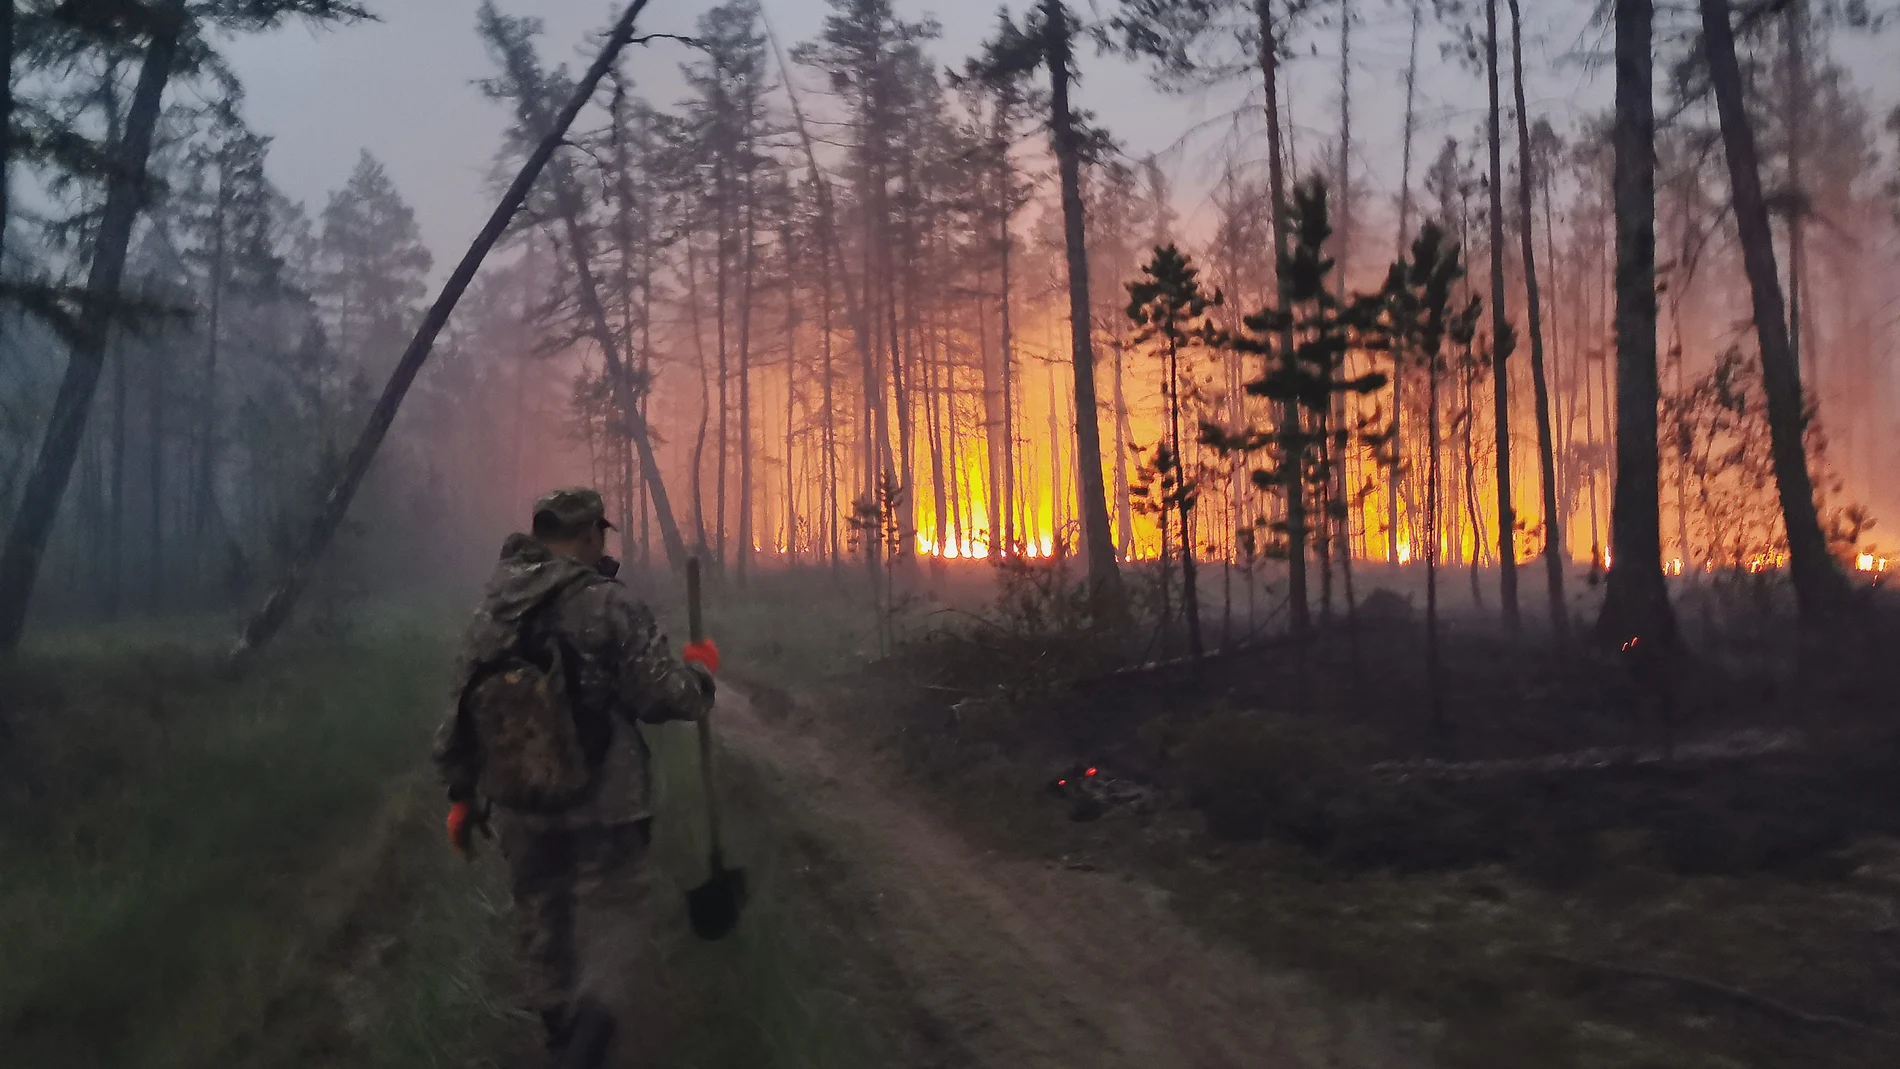 Voluntarios trabajan en las labores de extinción del fuego en la región rusa de Yakutia